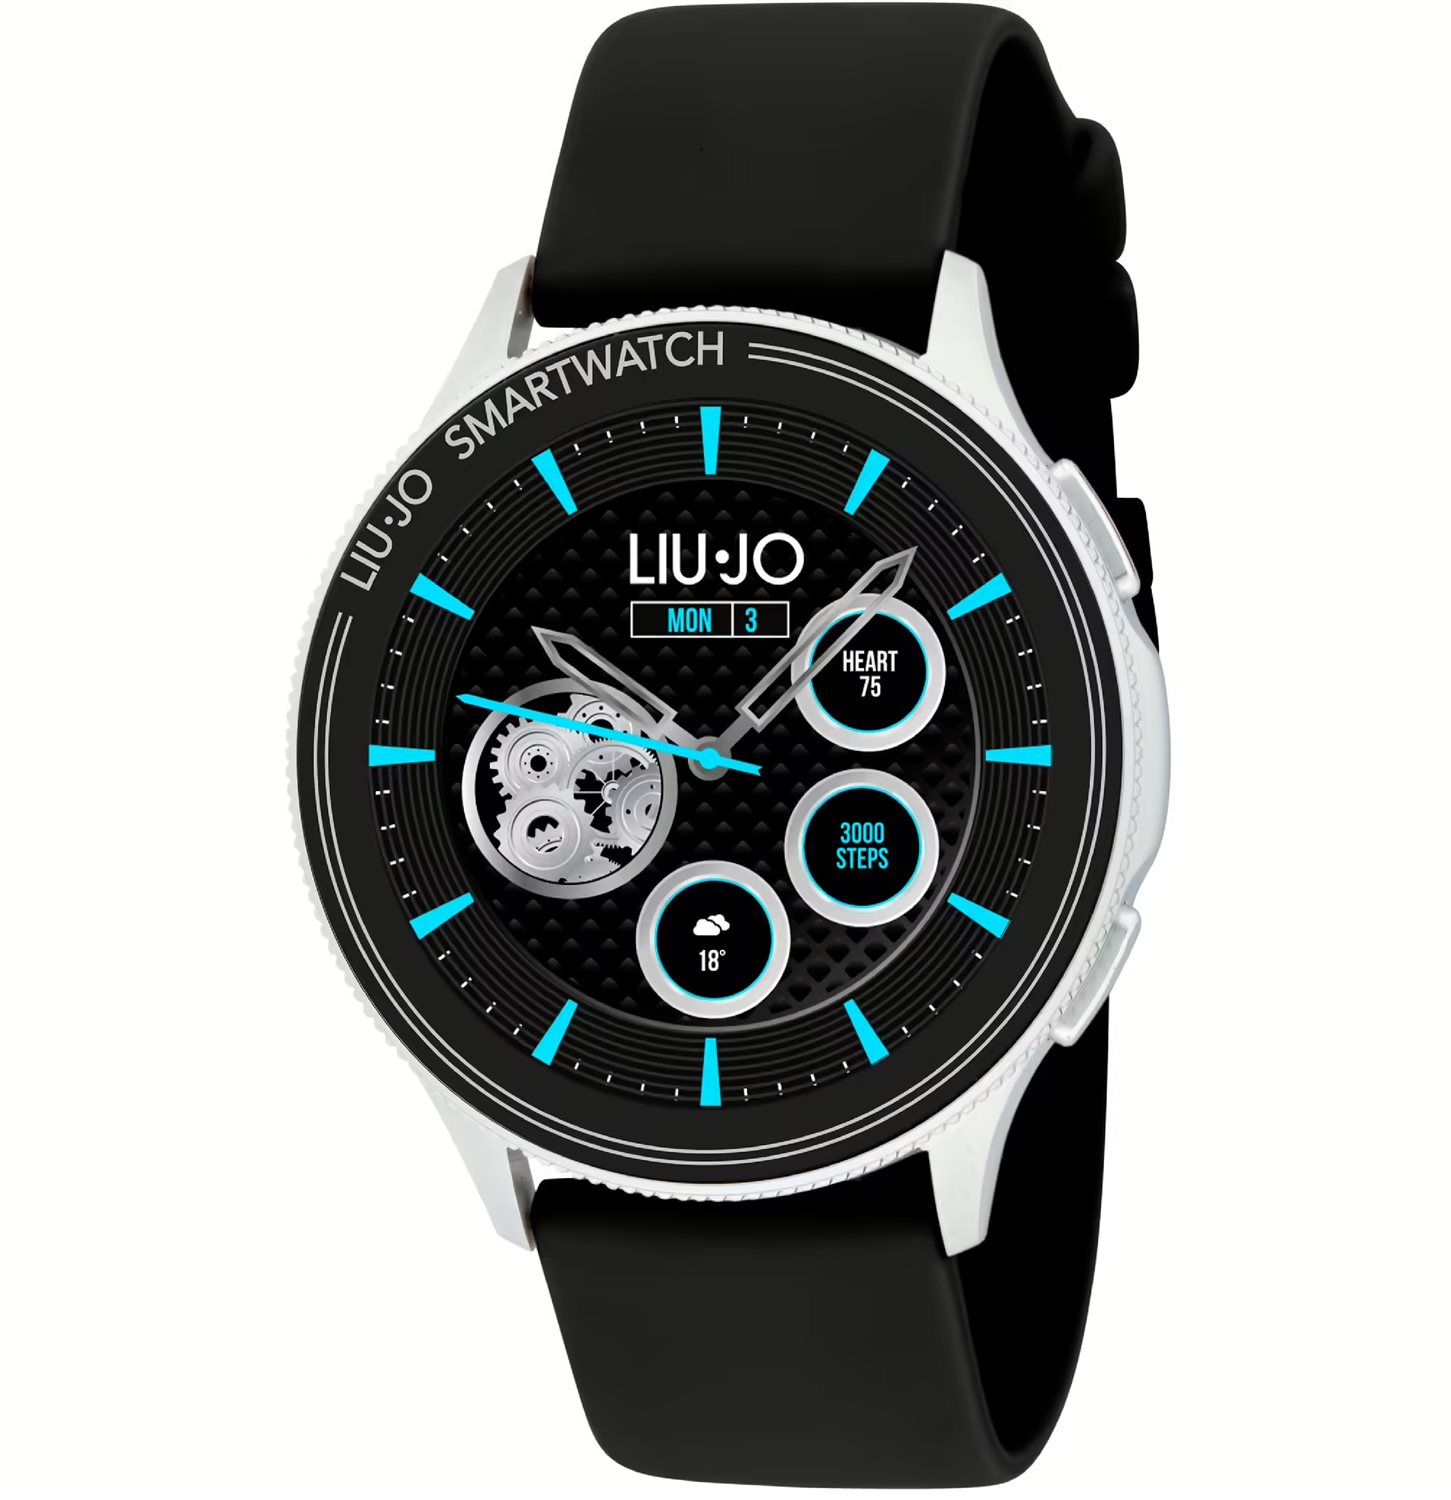 Liu Jo Smartwatch